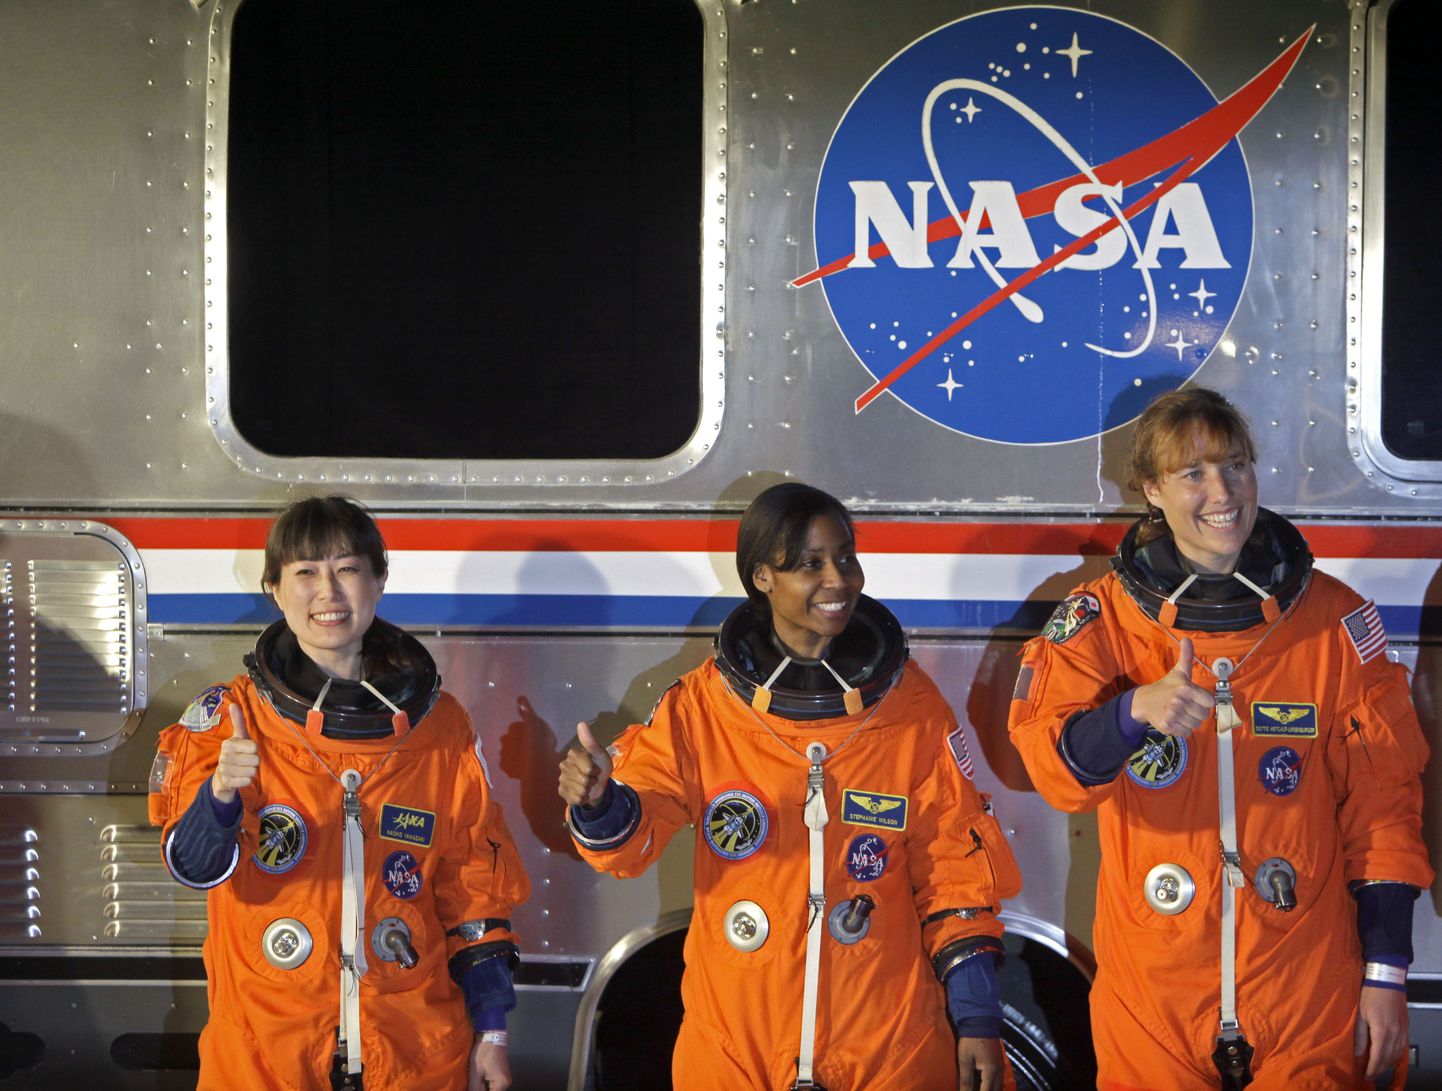 Kolm naisastronauti (vasakult paremale) - jaapanlanna Naoko Yamazaki ning ameeriklannad Stephanie Wilson ja Dorothy Metcalf-Lindenburger